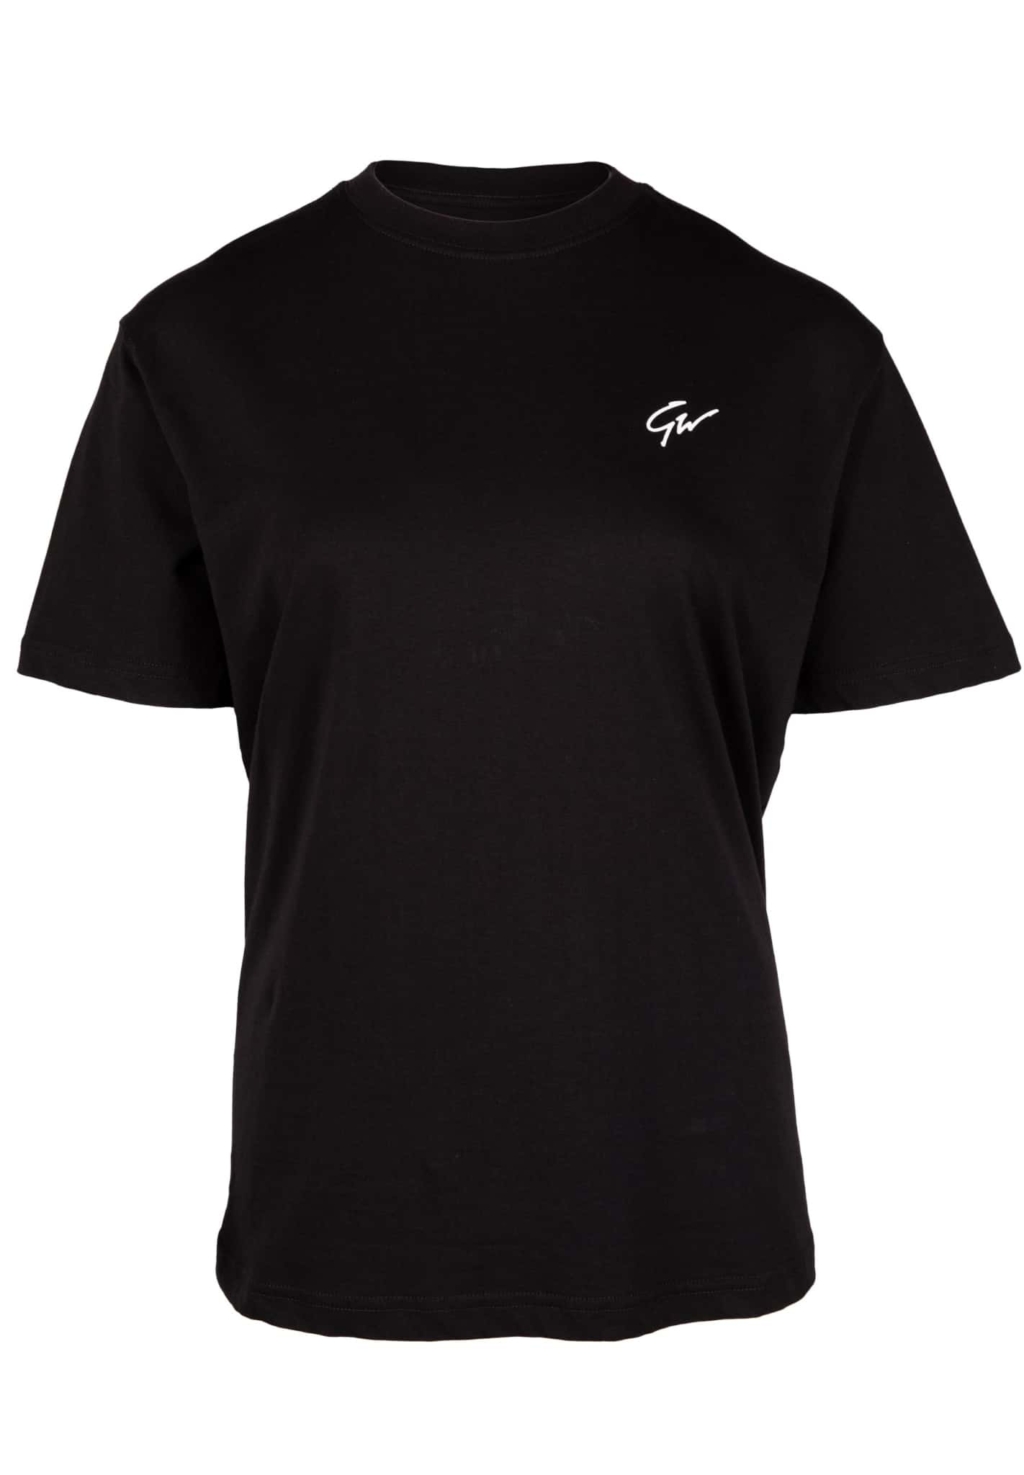 91531900 sandy oversized t shirt black 02 scaled